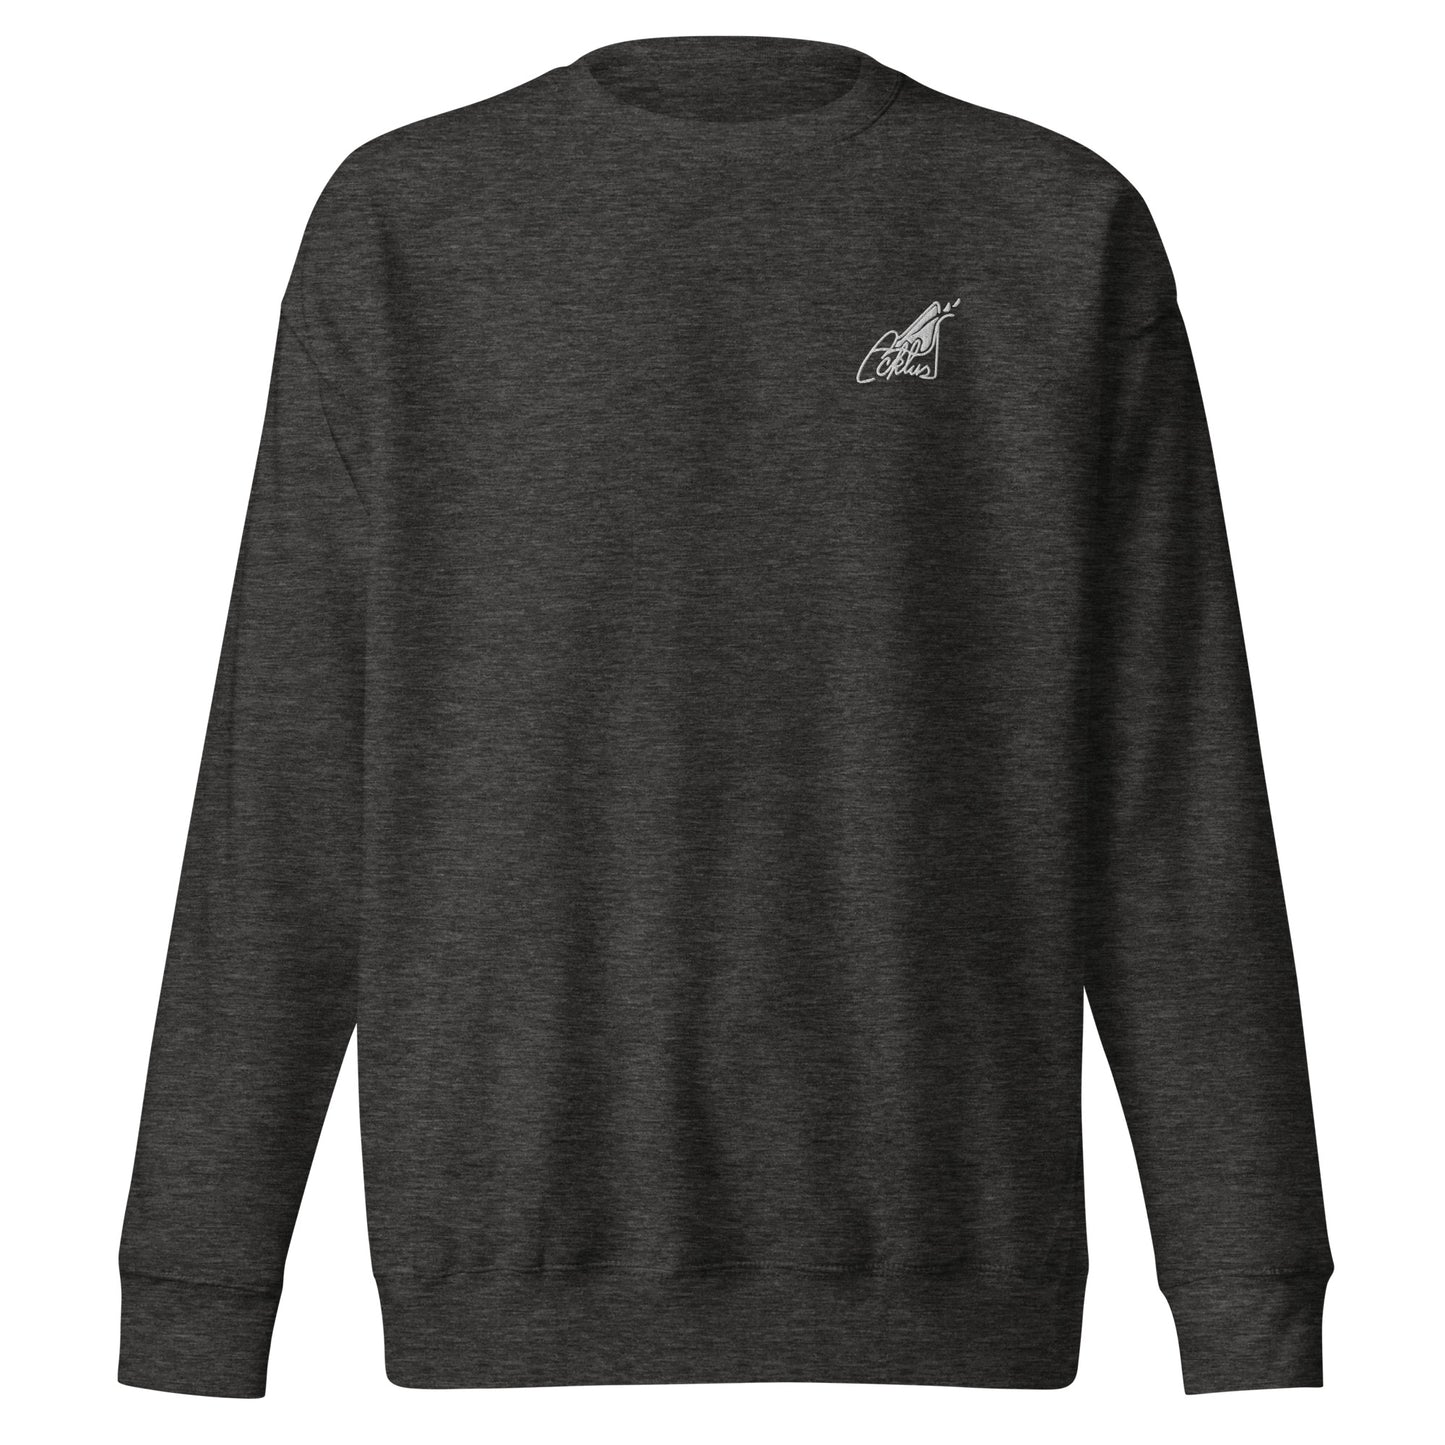 Acktus Multi-Color Premium Sweatshirt